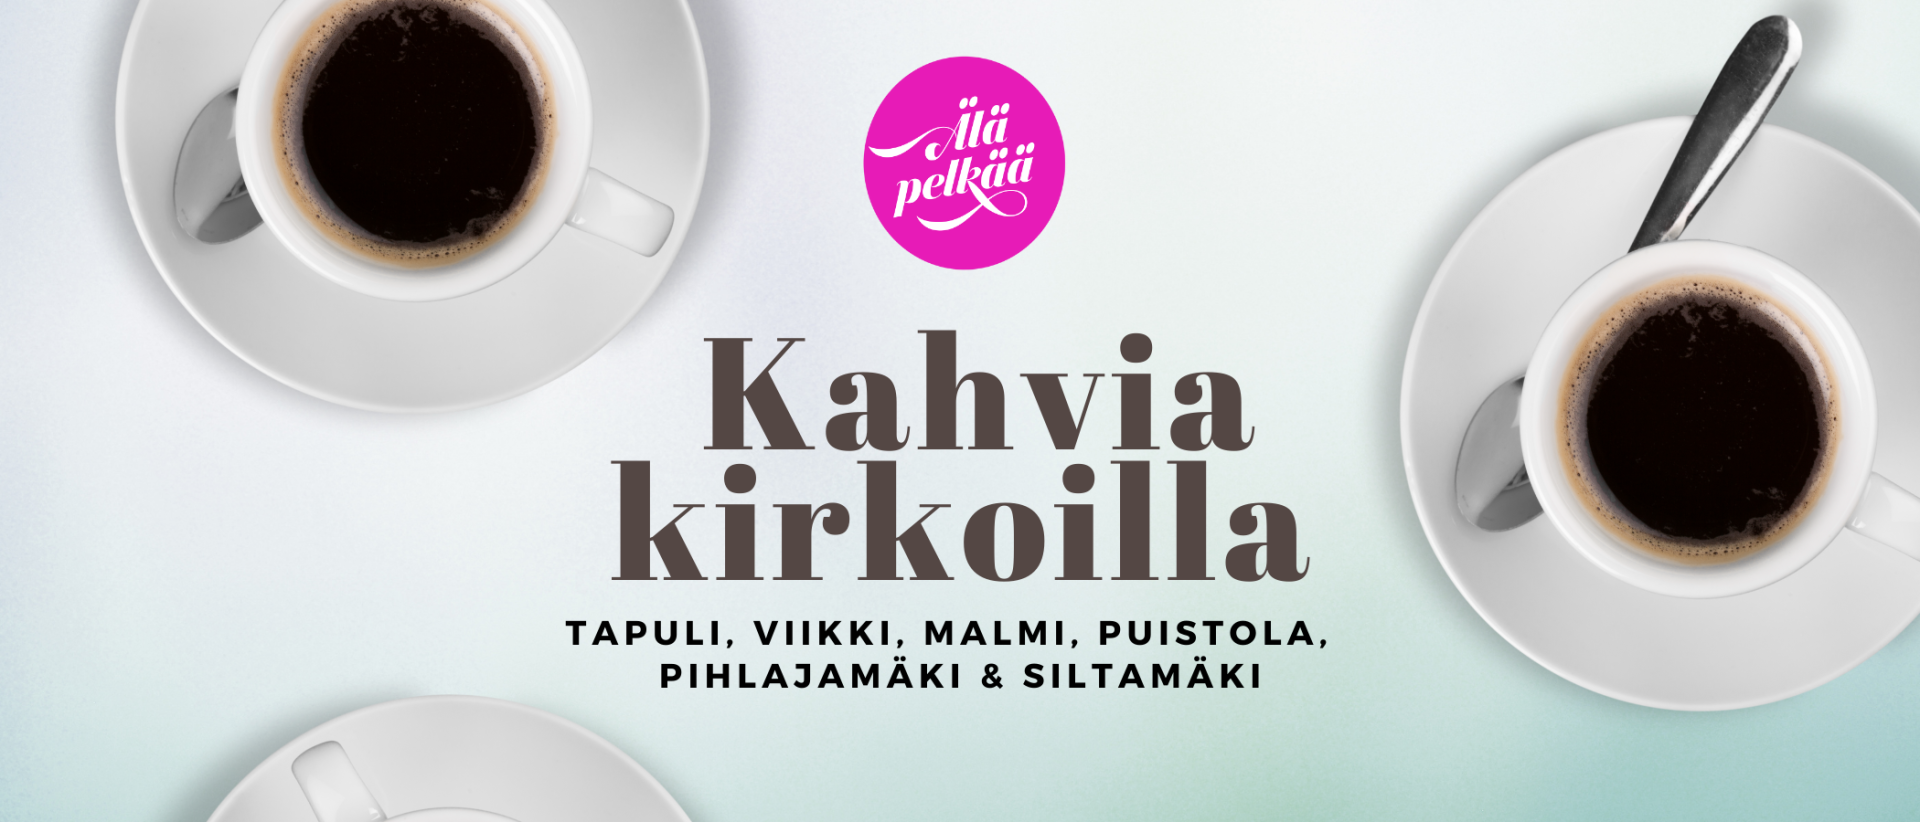 Kahvikuppeja, teksti: Kahvia kirkoilla Tapuli, Viikki, Malmi, Puistola, Pihlajamäki ja Siltamäki. Älä pelkää.